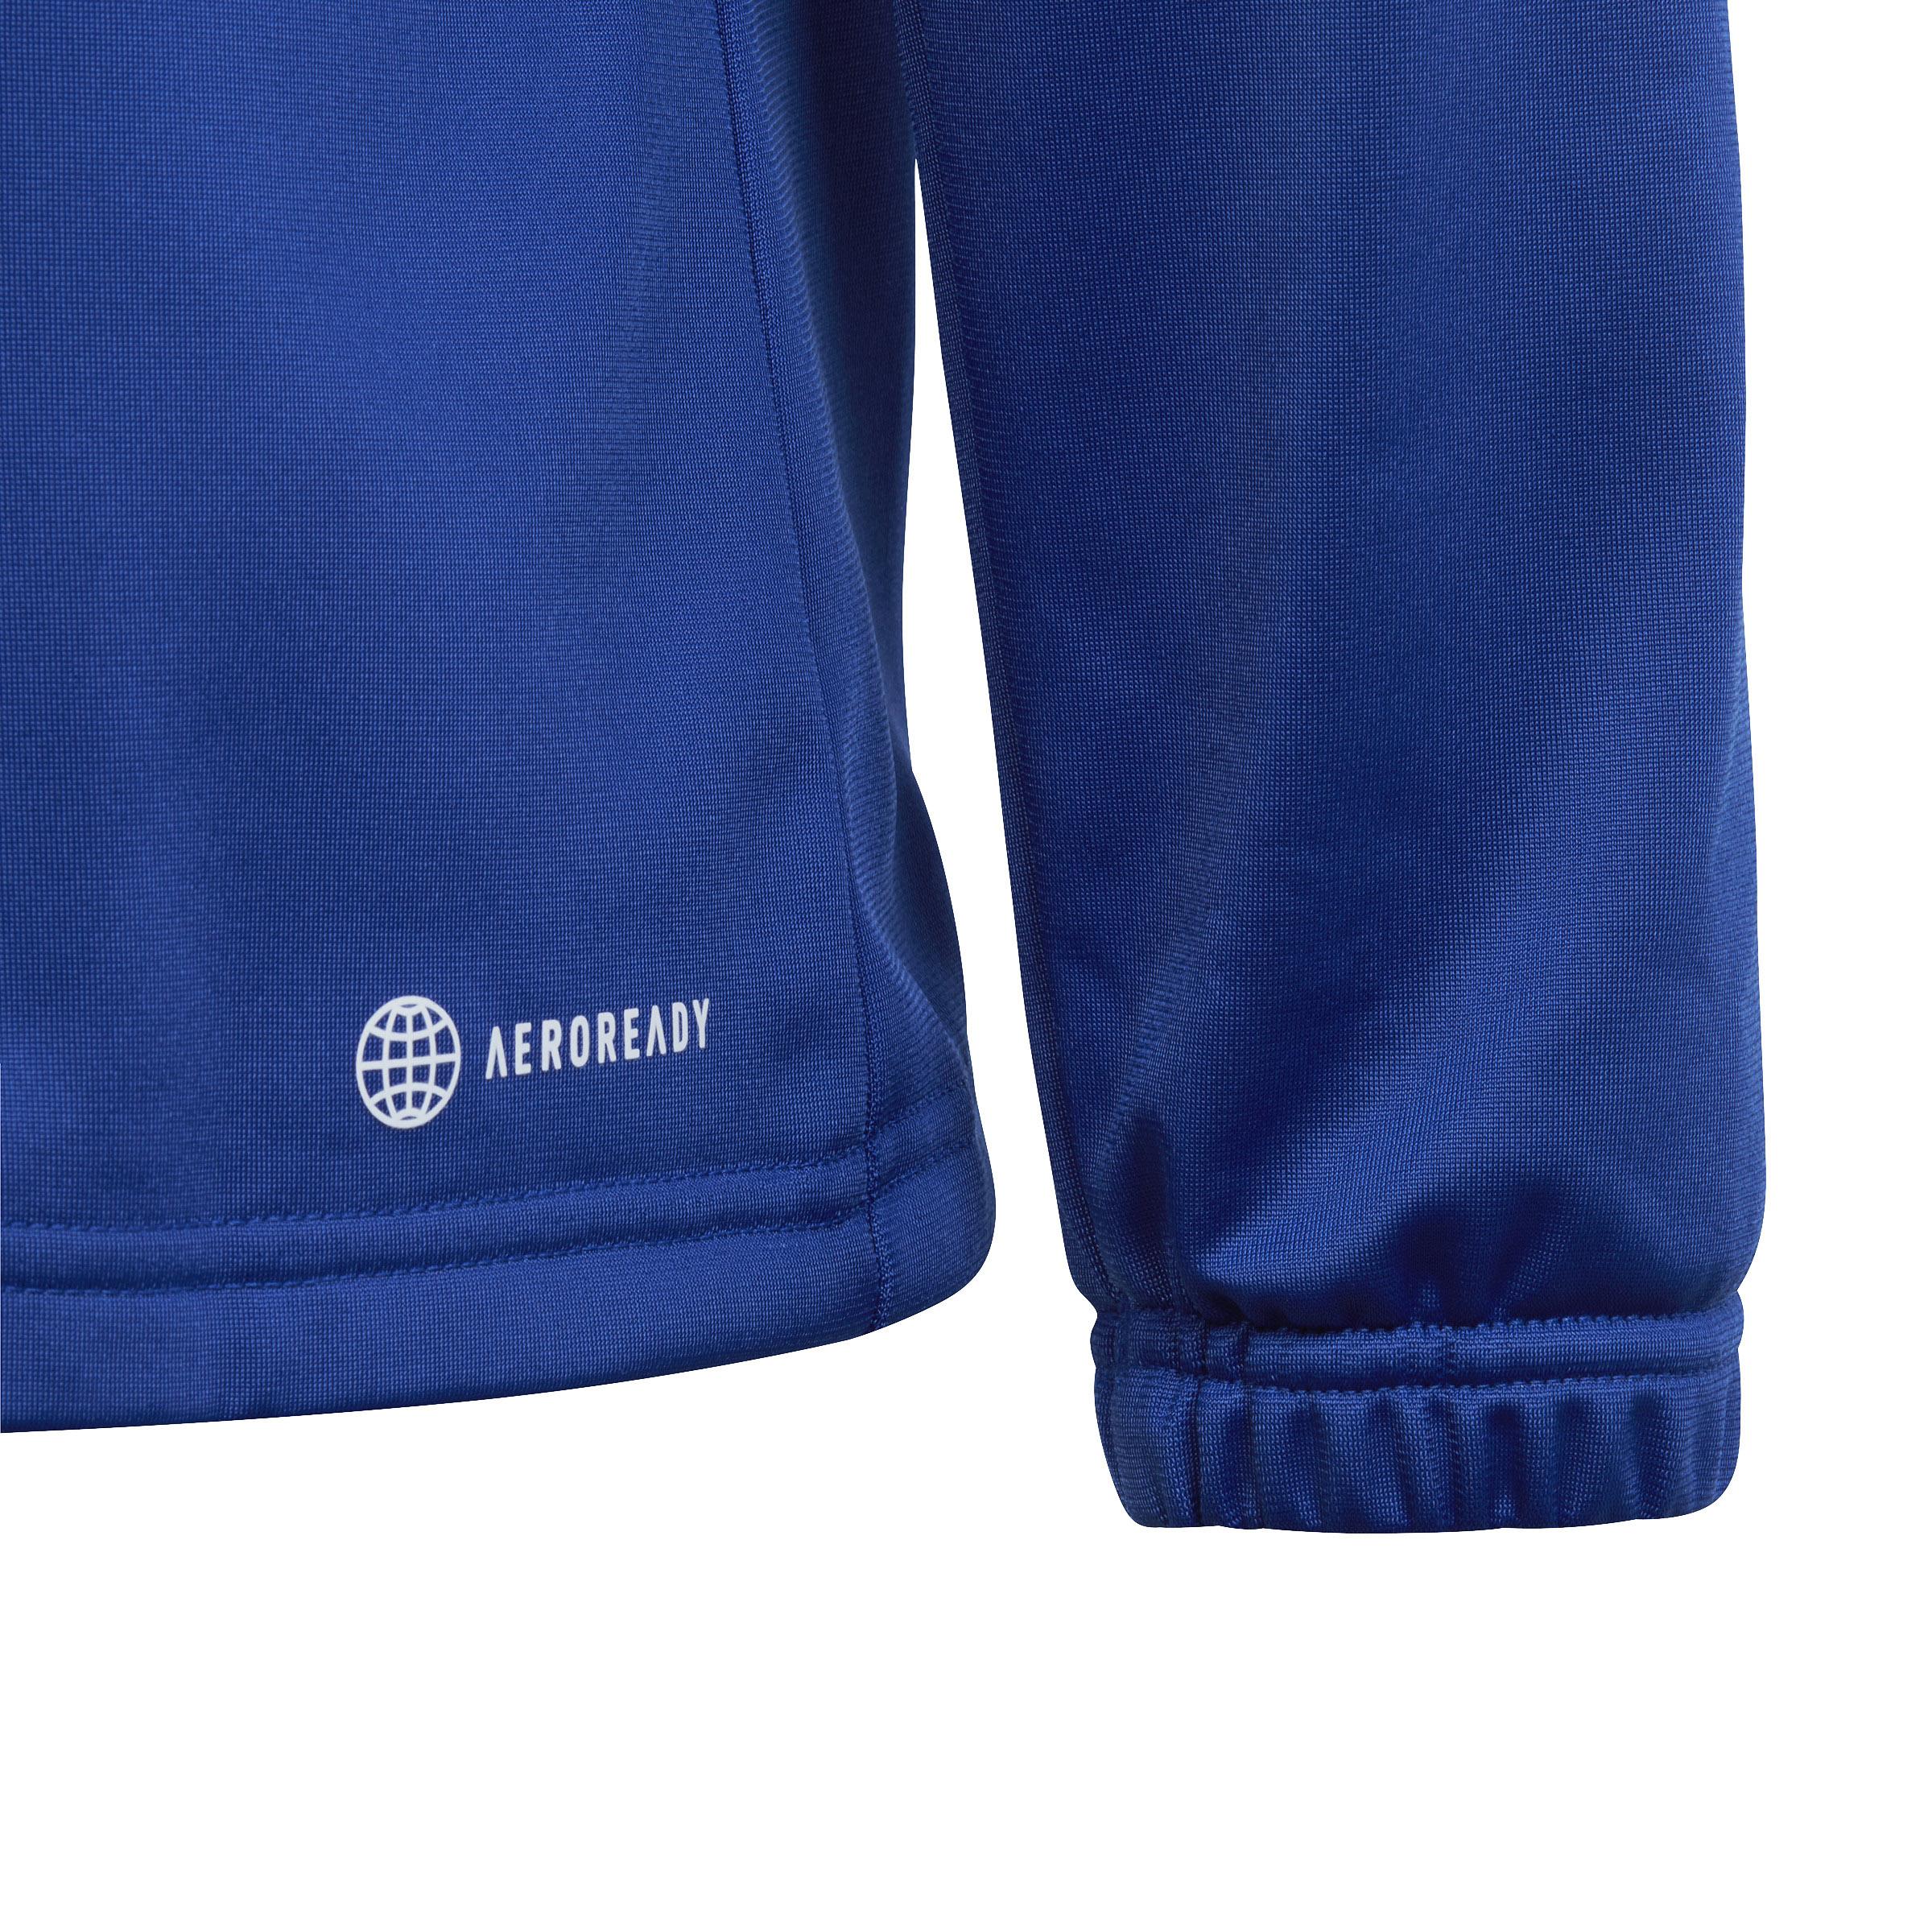 Adidas Trainingsanzug Jungen semi ink blue-white-legend im von SportScheck Shop kaufen lucid Online